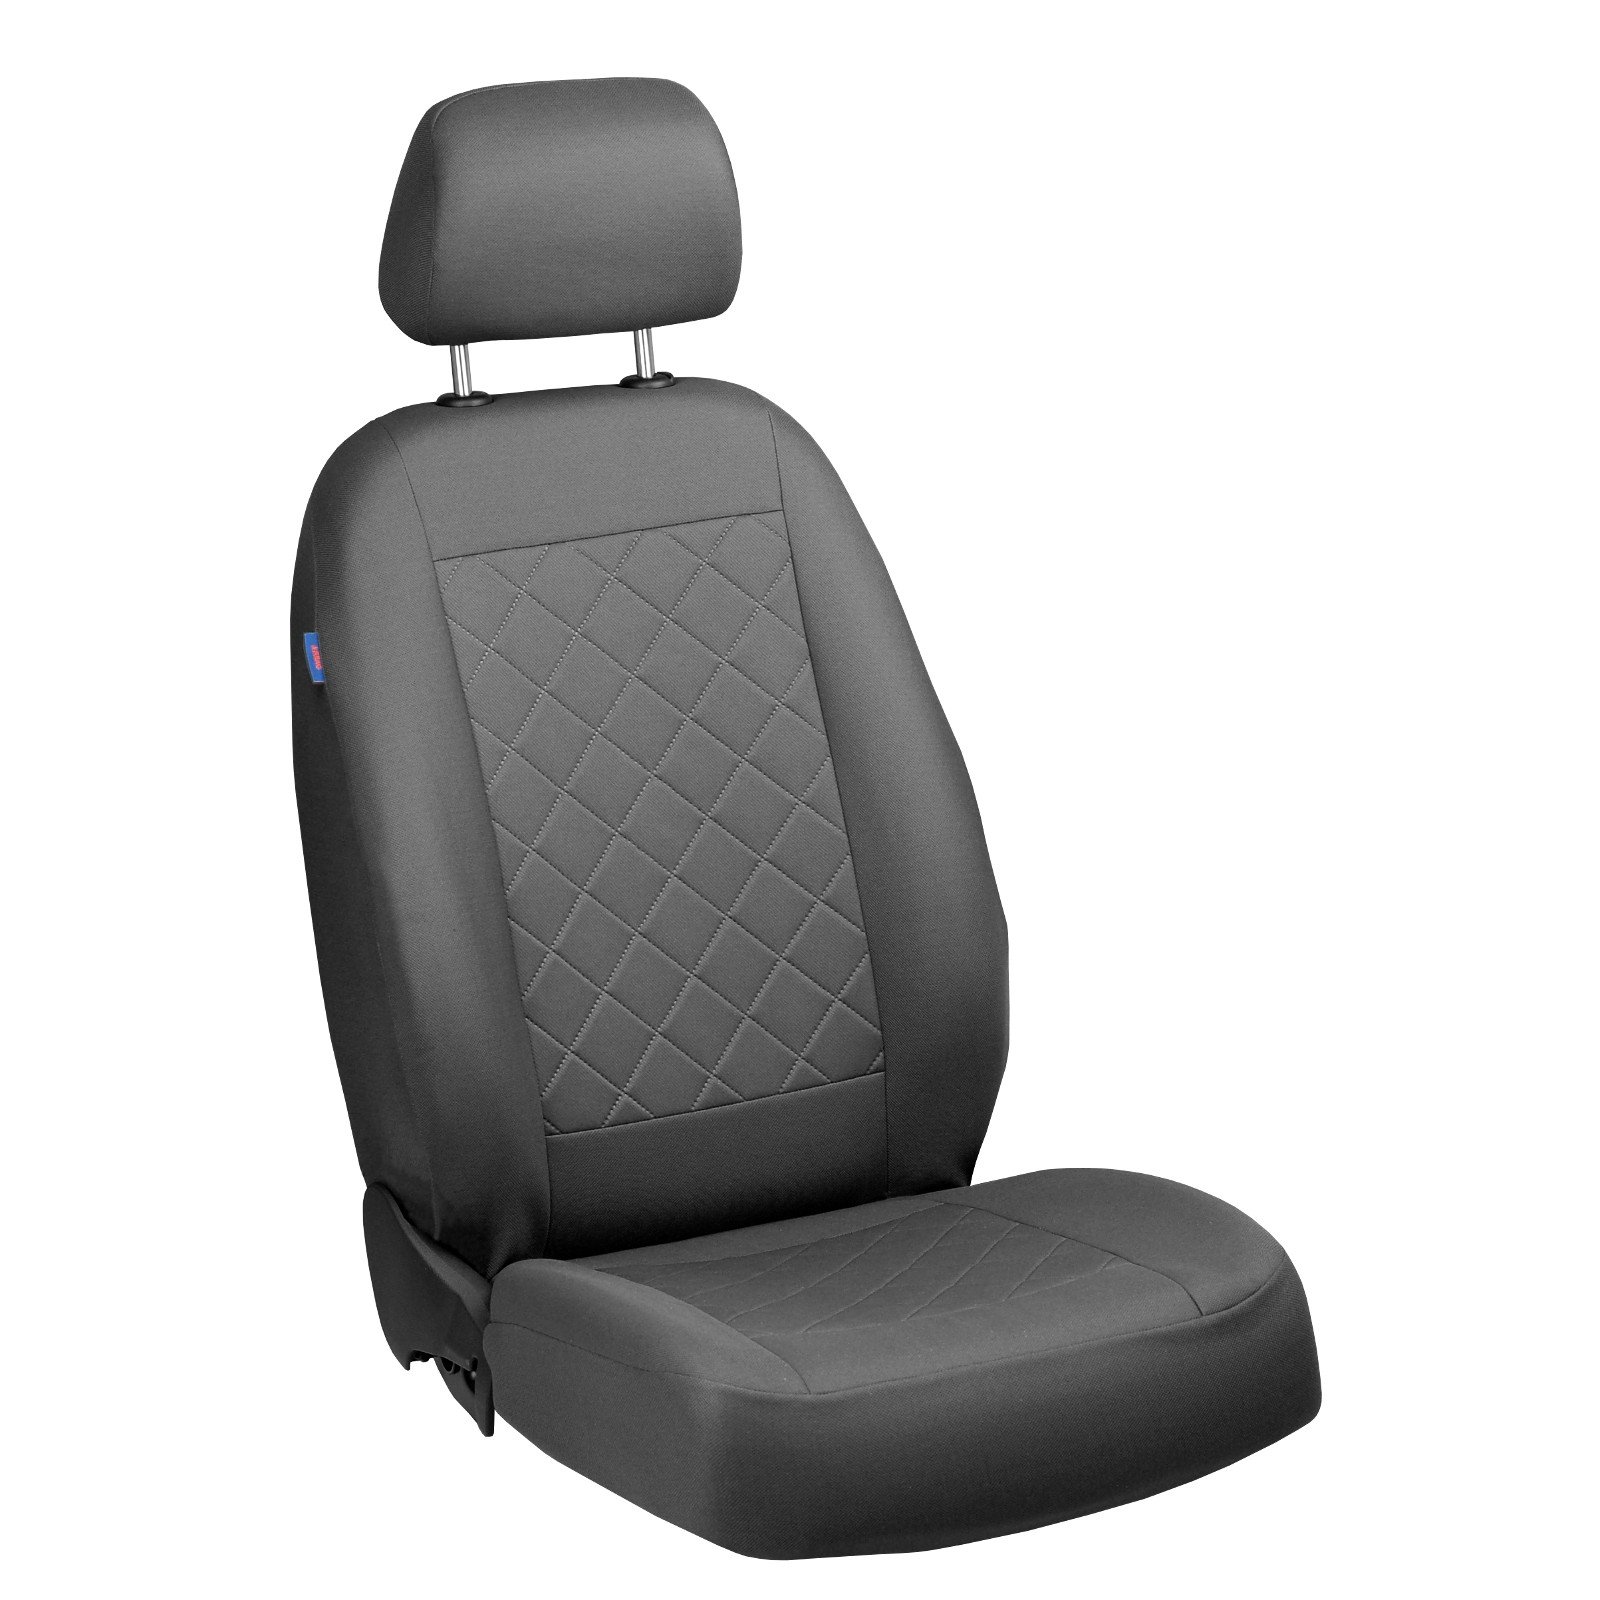 Zakschneider COLT Fahrer Sitzbezug - Farbe Premium Grau gepresstes Karomuster von Zakschneider